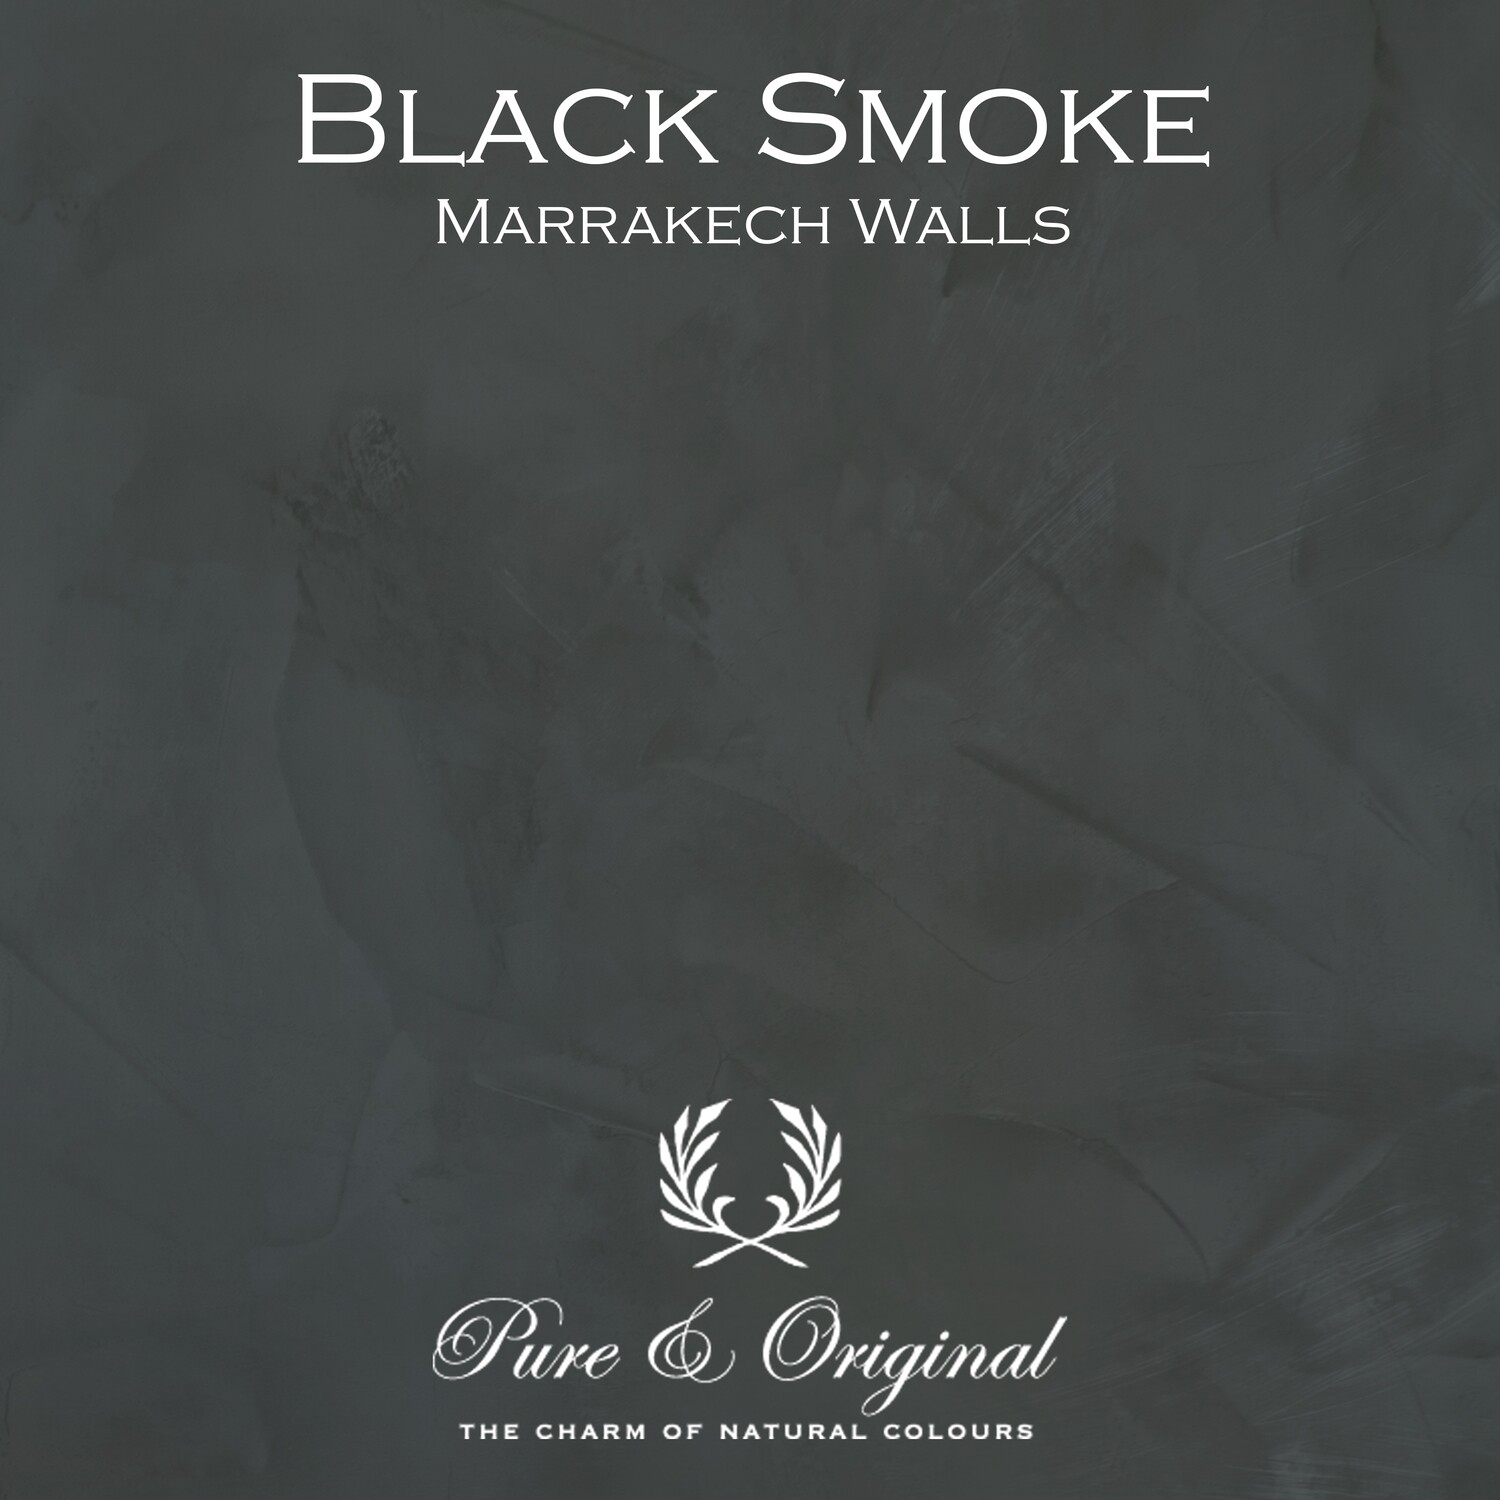 Black Smoke Marrakech